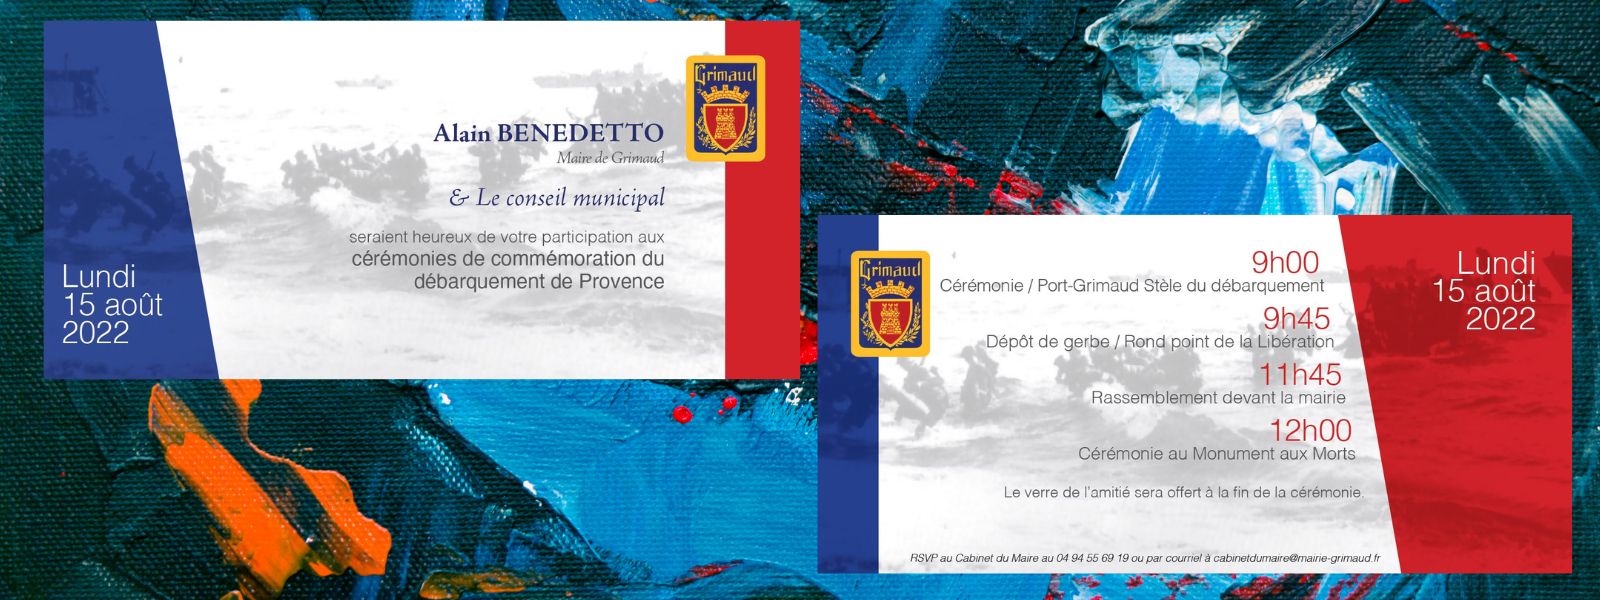 Invitation : cérémonies du 15 août 2022 - libération de la Provence 